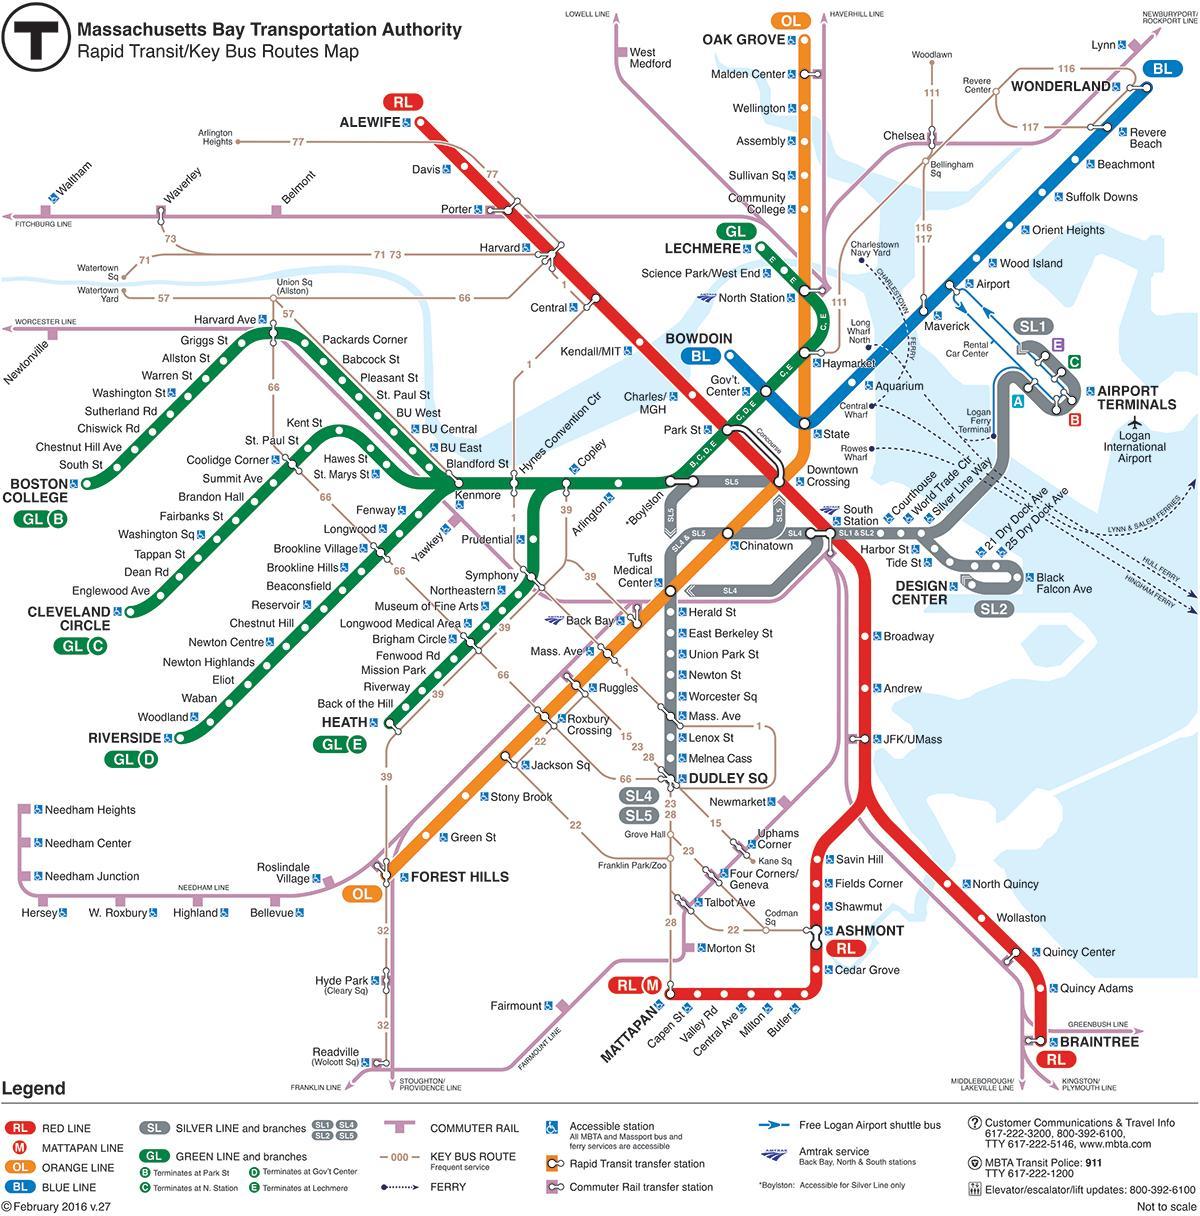 MBTA zemljevidu z rdečo črto